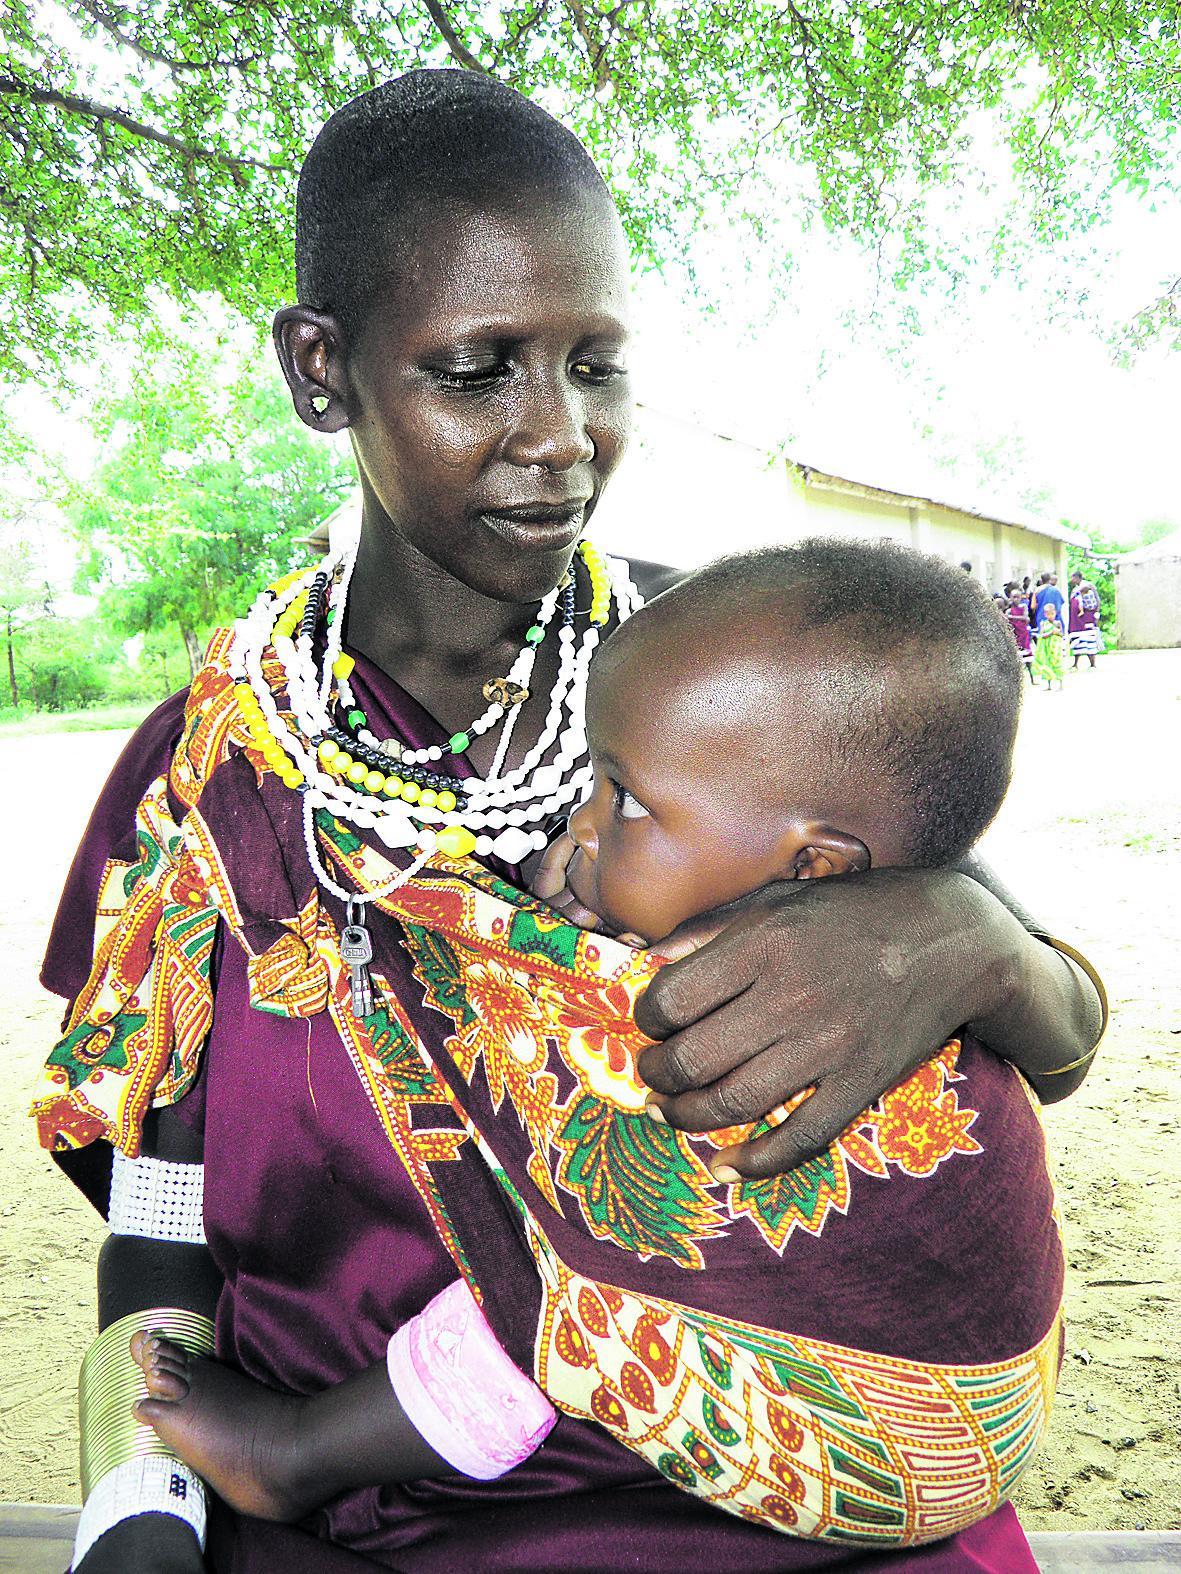 Äkkiä pakoon. Naunai Machau synnytti pakomatkalla savannilla toisen lapsensa. Kristitty hänestä tuli, kun kirkon apu kriittisellä hetkellä teki vaikutuksen.